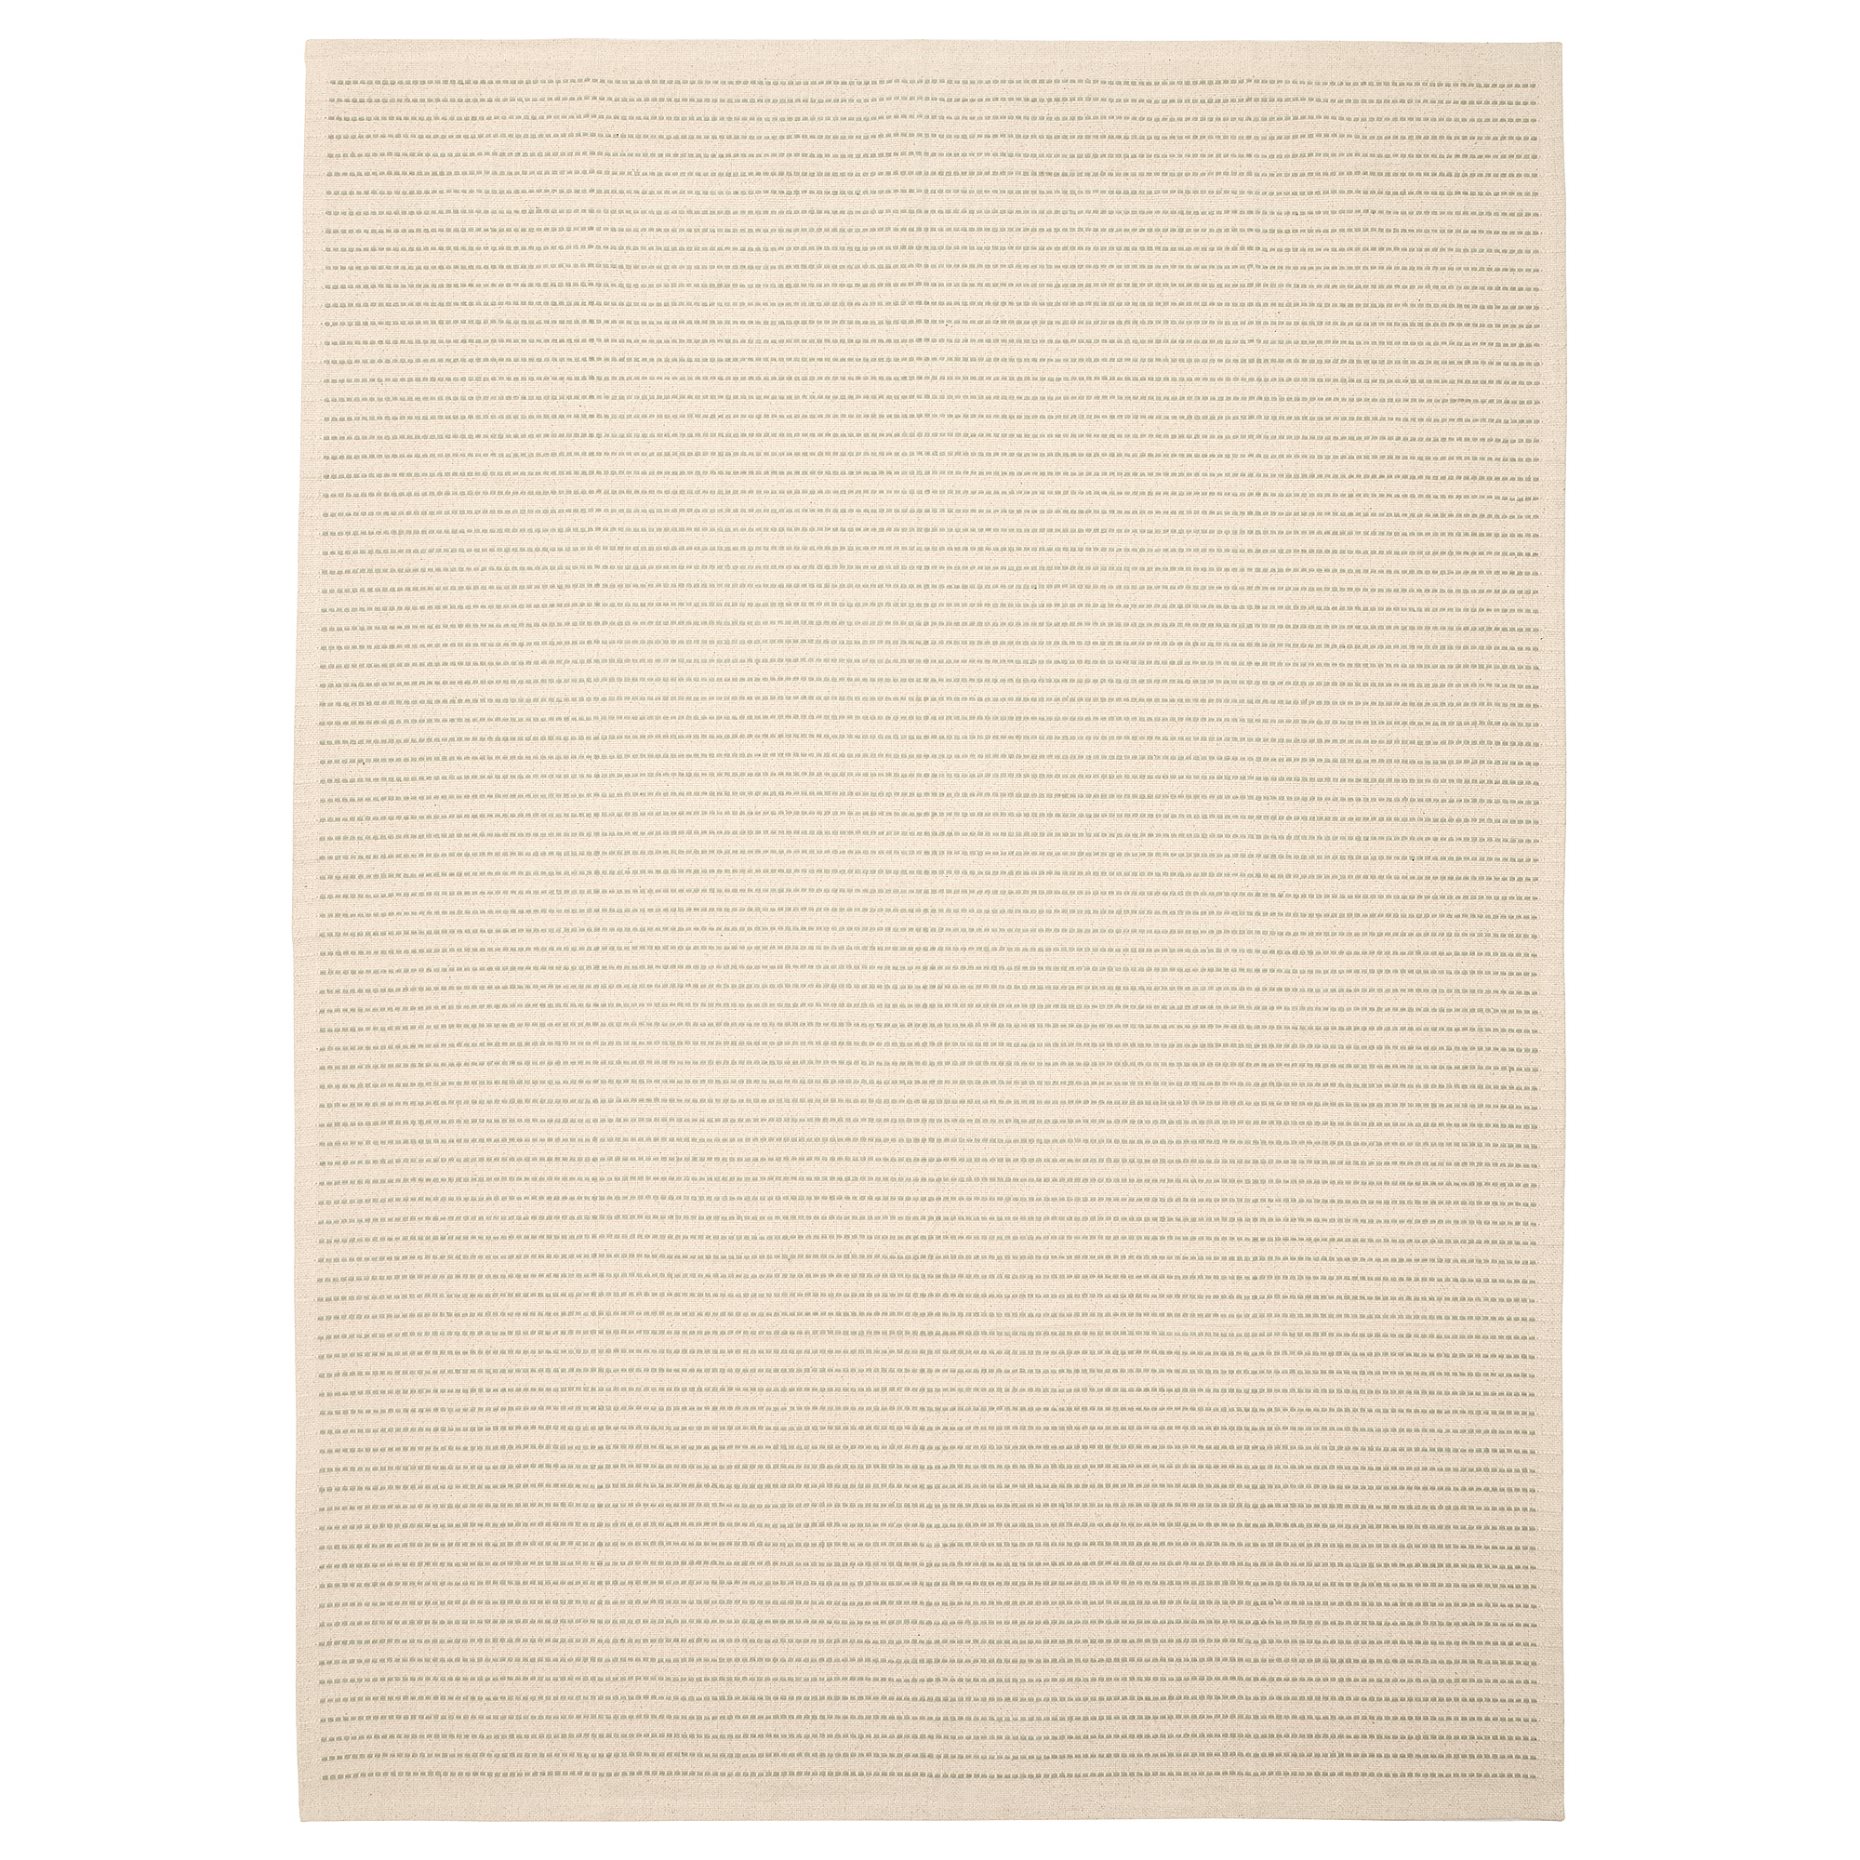 STARREKLINTE, килим, гладко тъкан, 155x220 см, 005.079.09